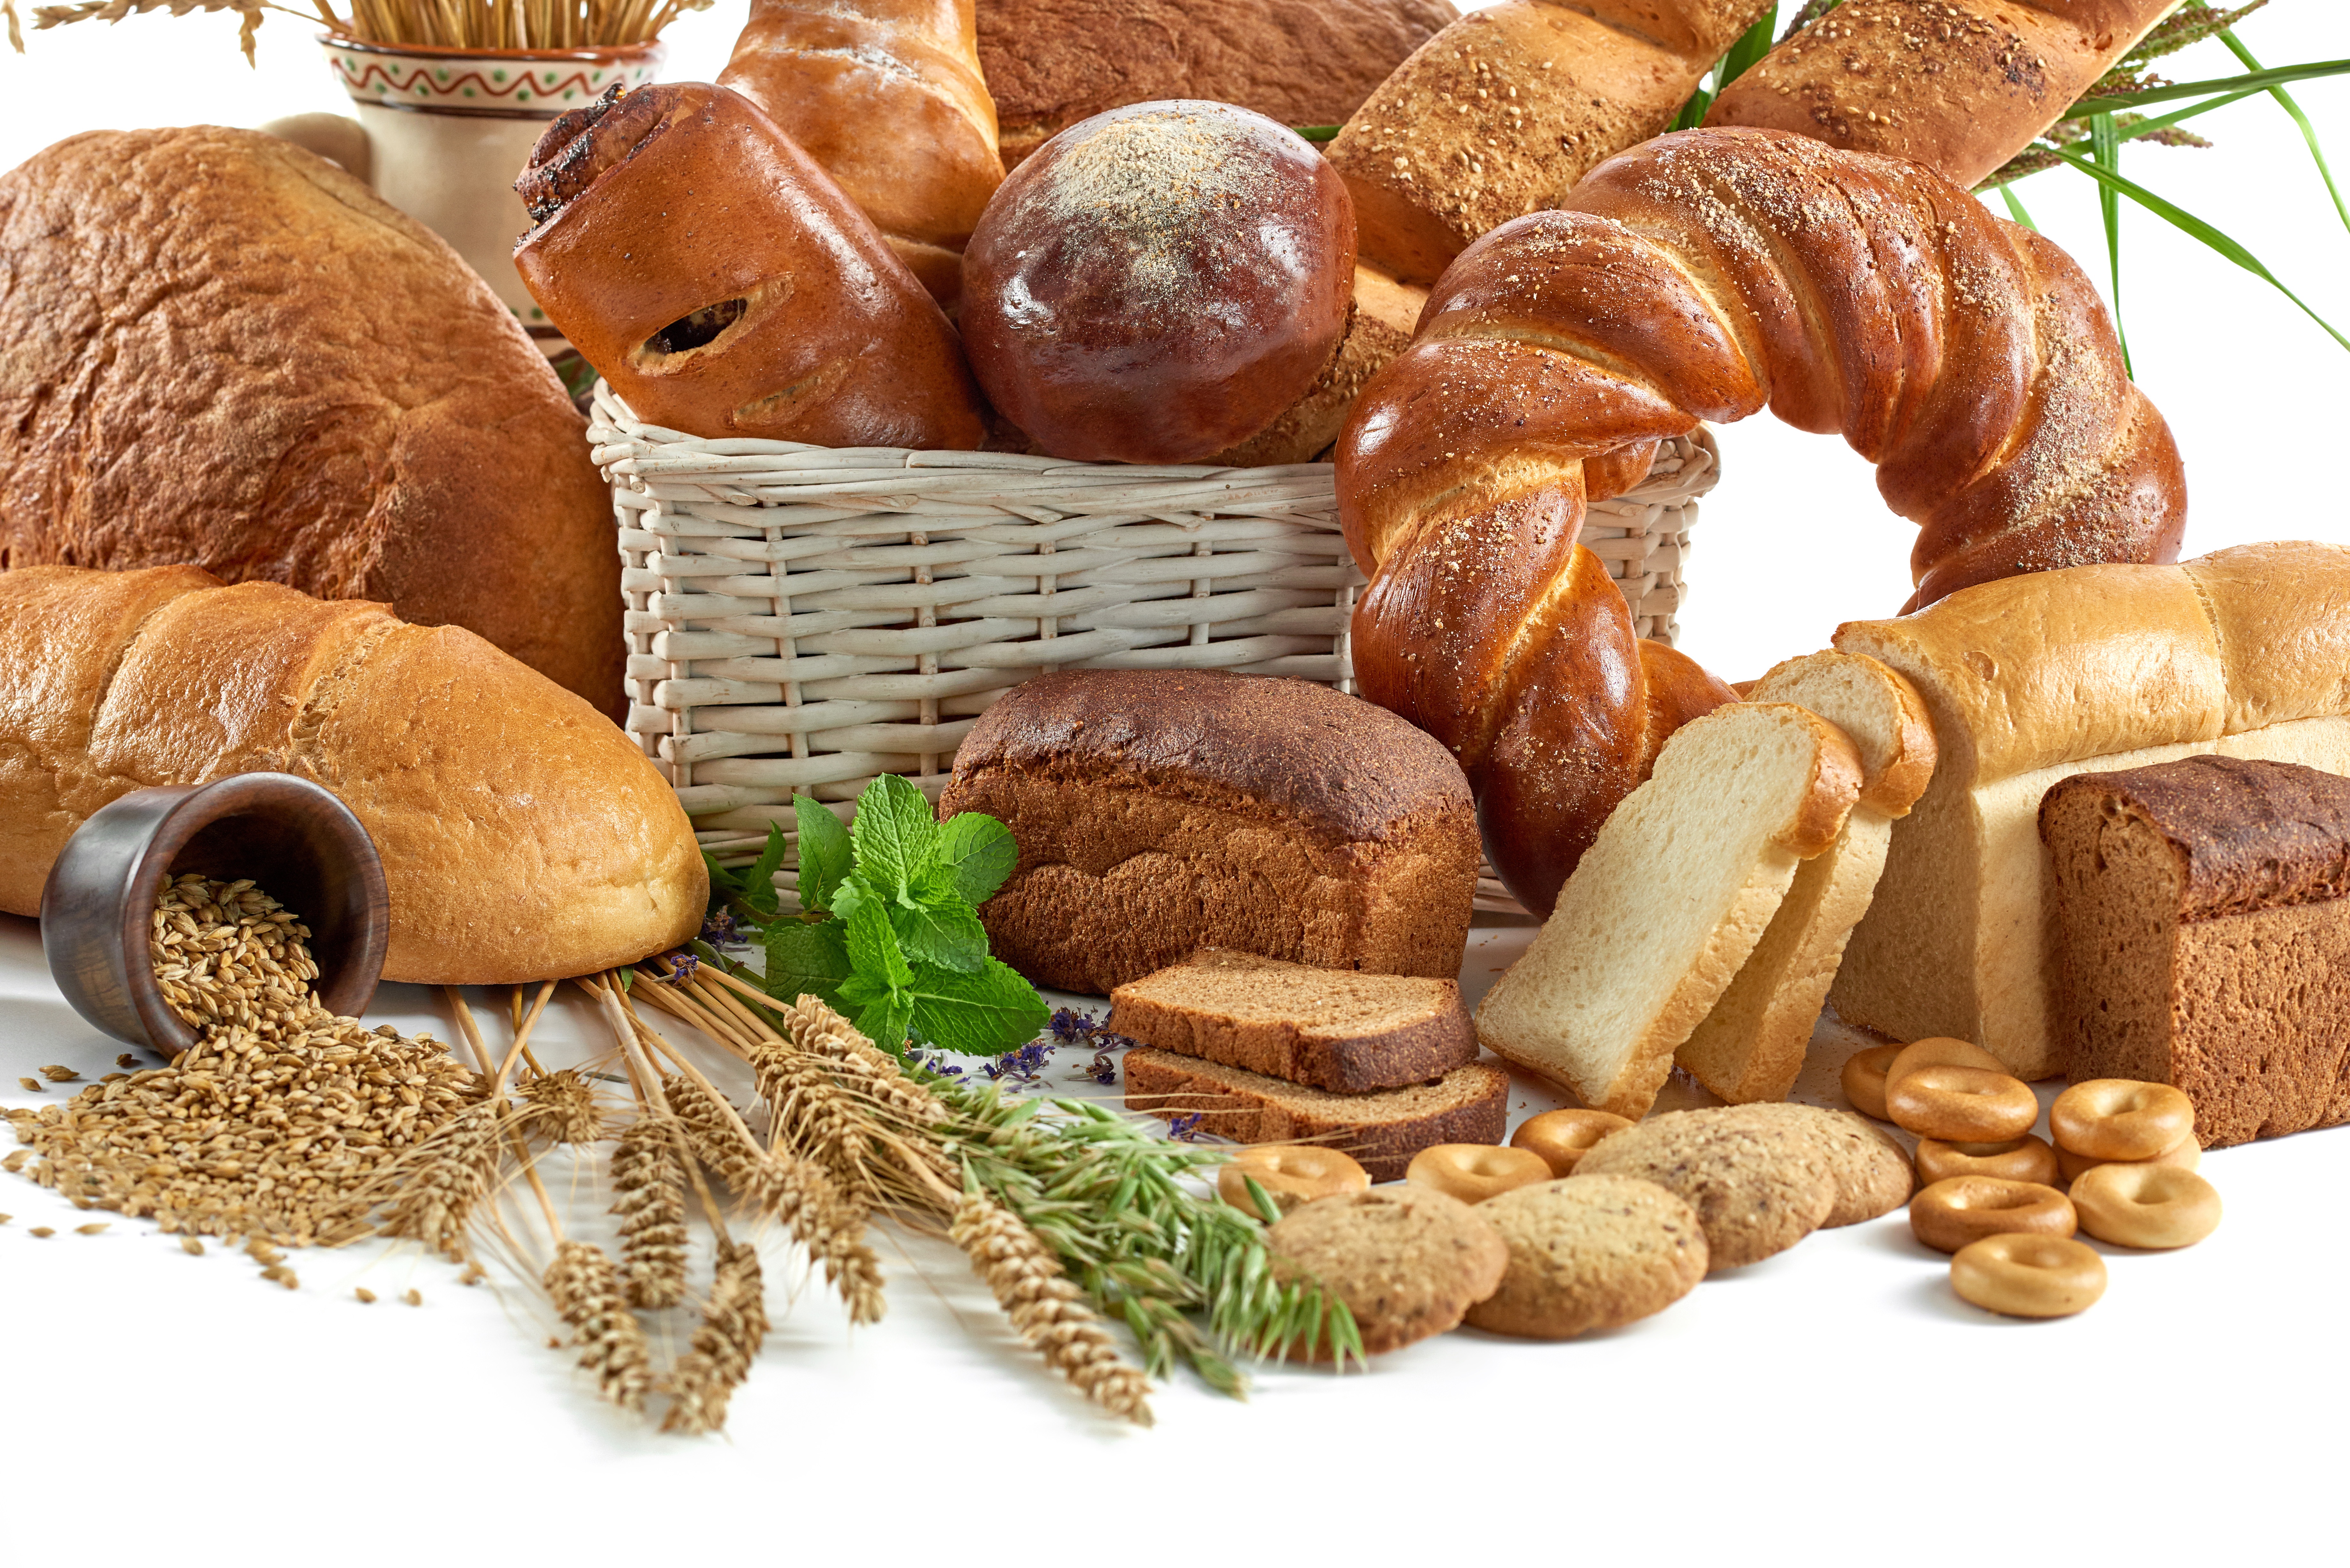 Хлеб и т д. Хлеб и хлебобулочные изделия. Хлеюа юулочные изделия. Хлебо булочяные изделия. Хлеюбо булочные изделия.